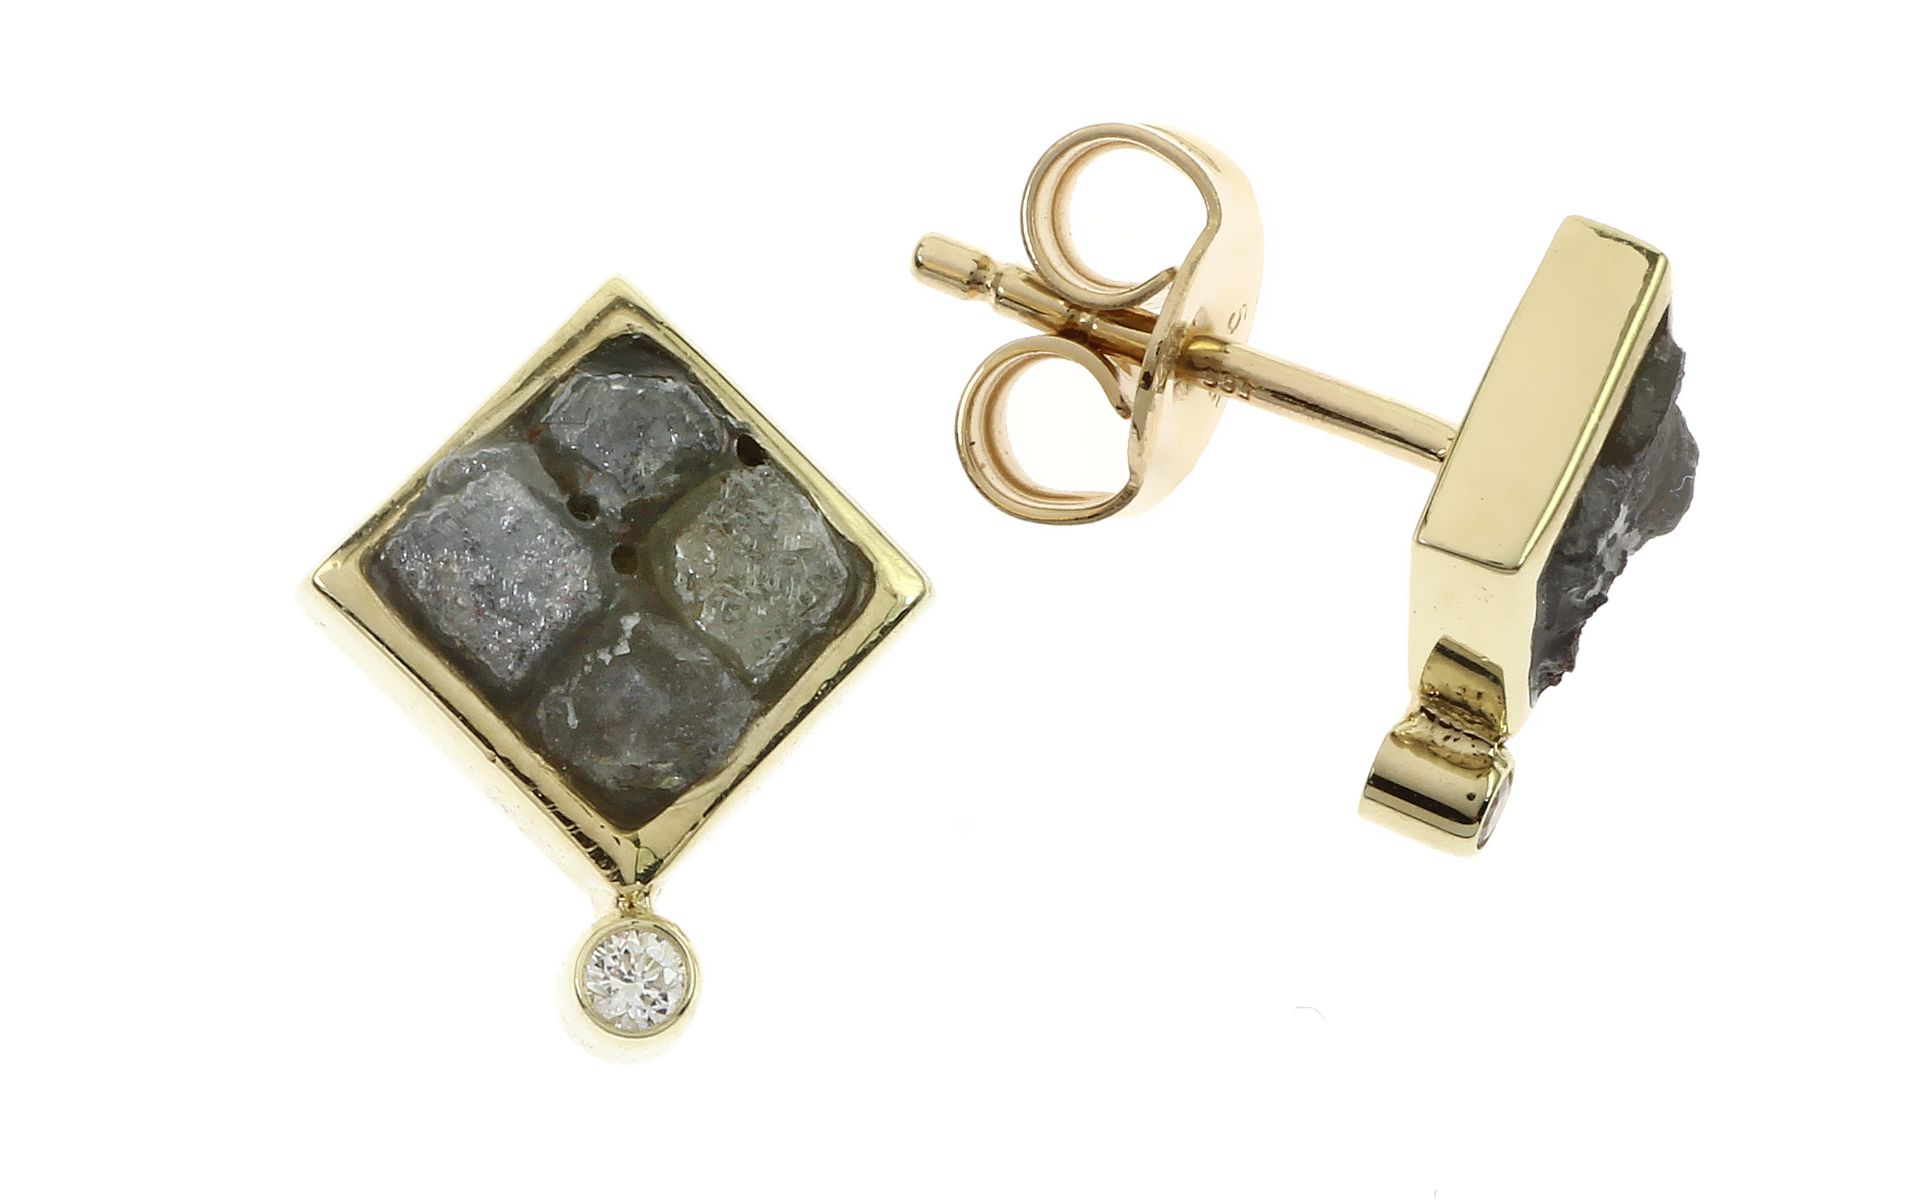 Ohrstecker 1.94g 585/- Gelbgold mit 2 Diamanten zus. ca. 0.03 ct. K/vs und 8 Diamanten im Rohschliff